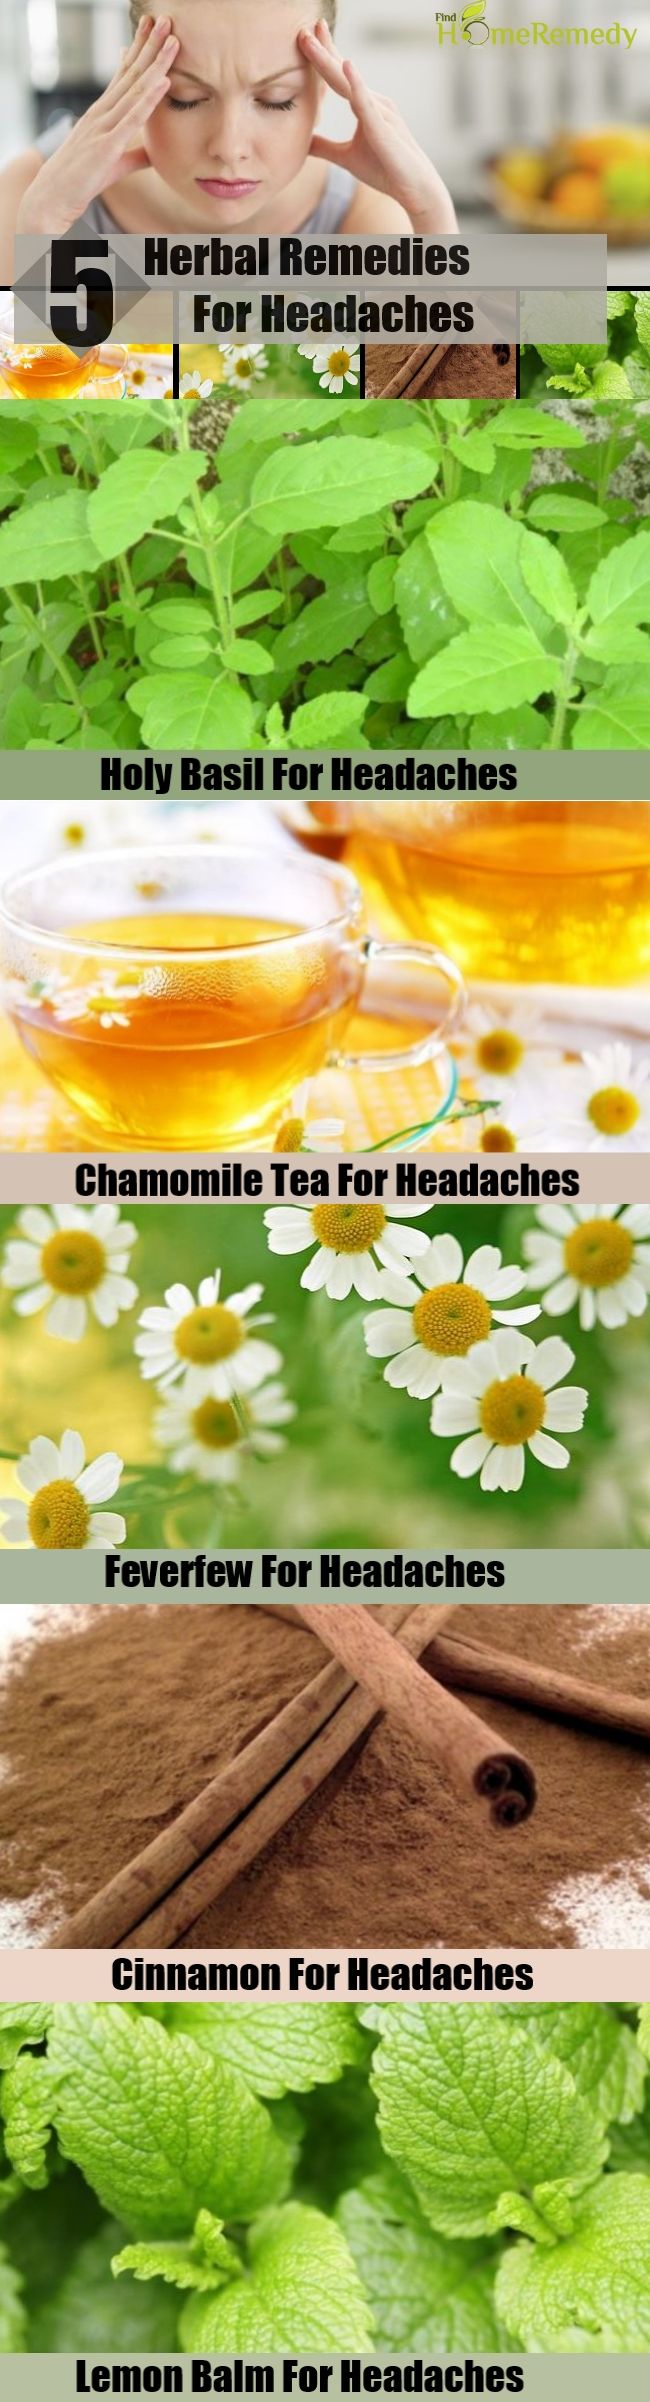 5 Remèdes naturels pour les maux de tête